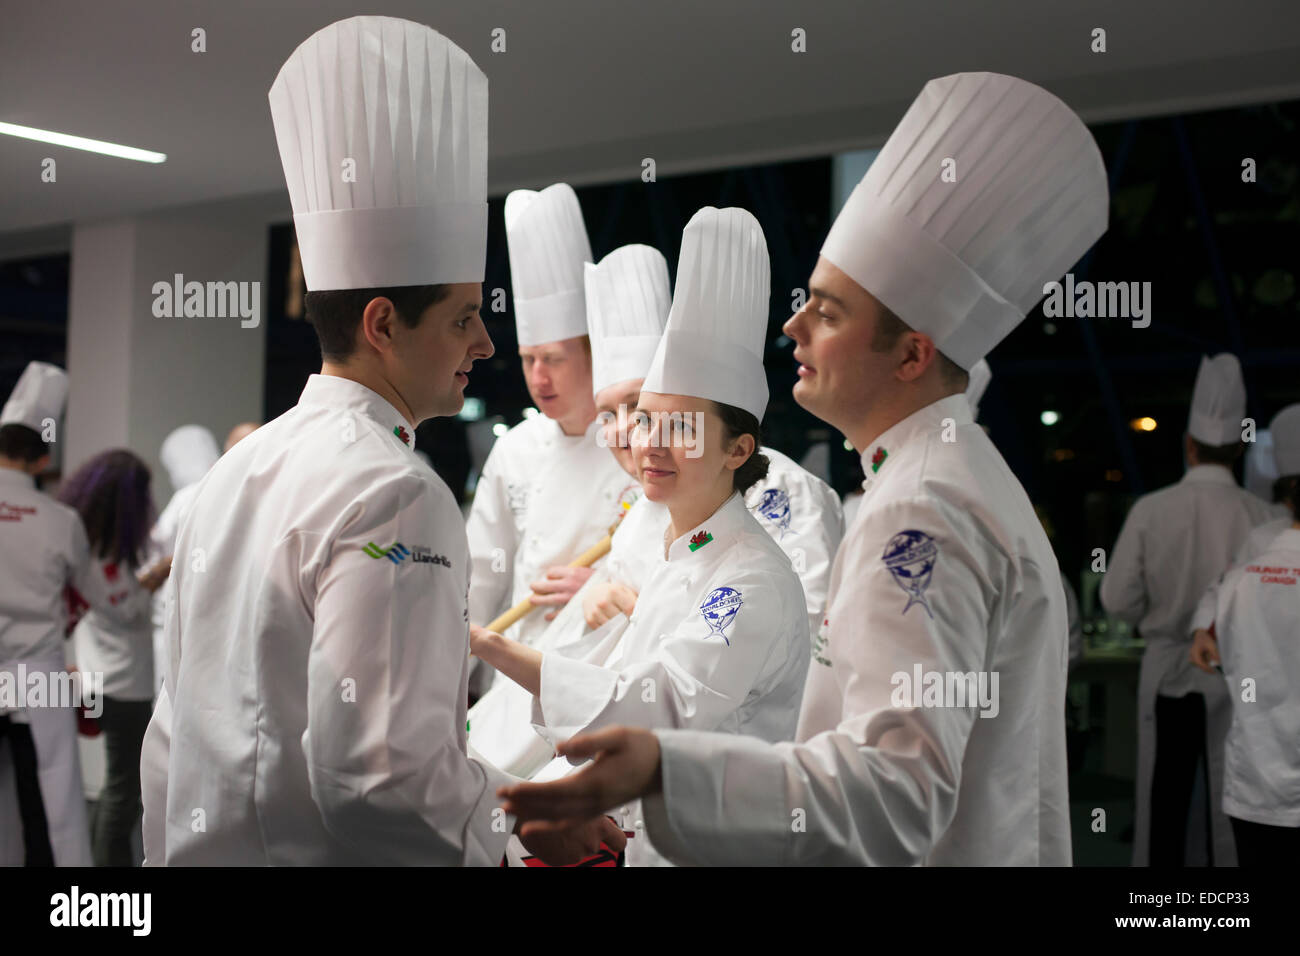 Chefs en attente de la cérémonie d'ouverture de la Le Villeroy & Boch Culinary World Cup, le Luxembourg. Banque D'Images